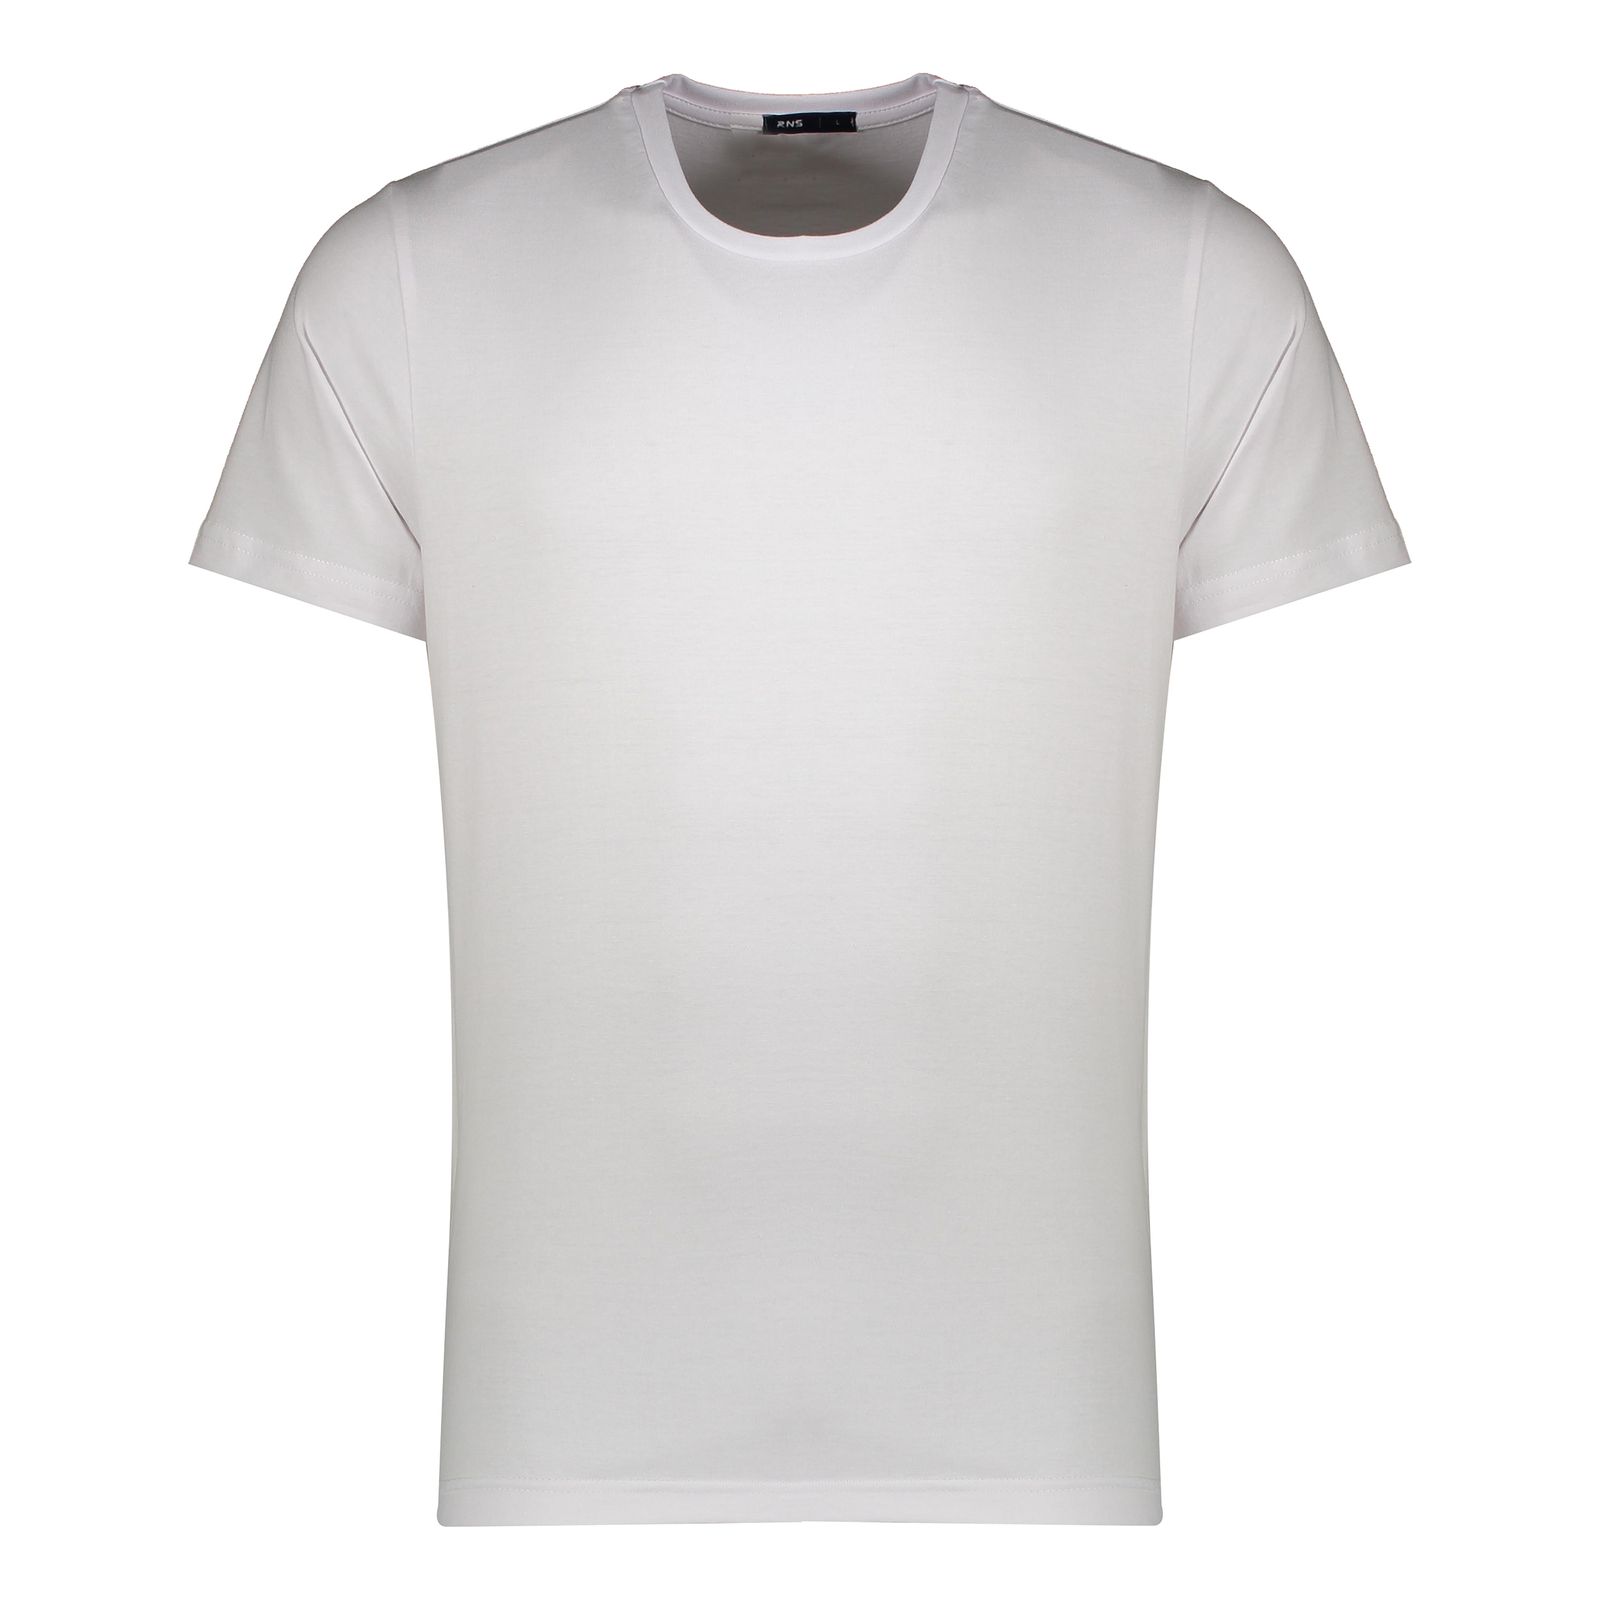 تی شرت آستین کوتاه مردانه آر اِن اِس مدل 01-12021758 -  - 1